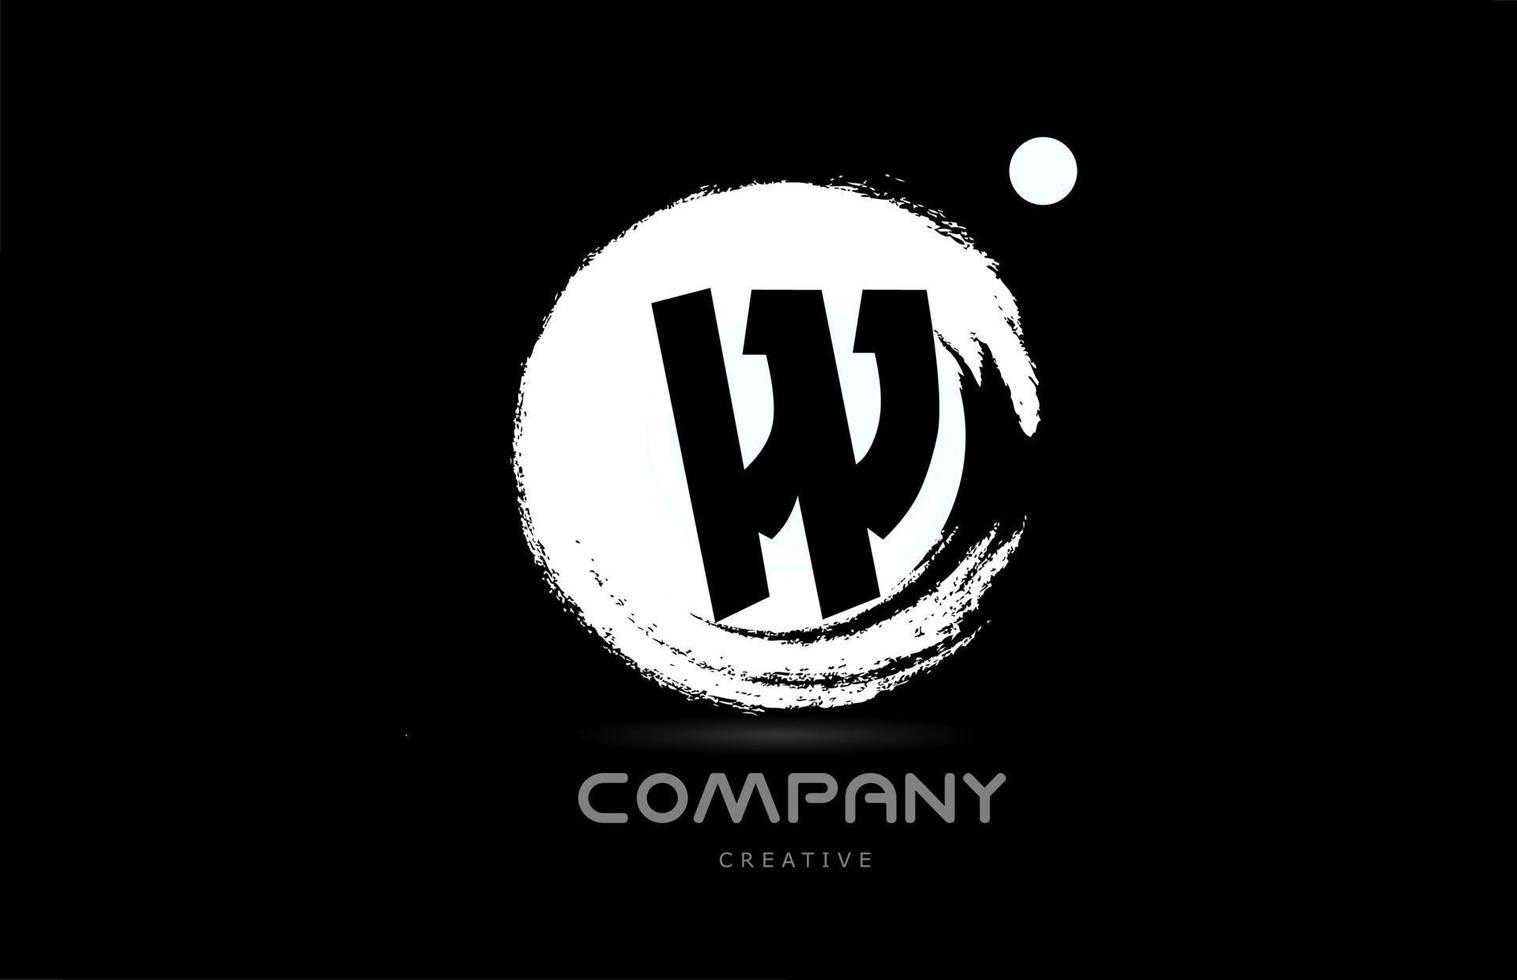 w projeto do ícone do logotipo da letra do alfabeto grunge com letras de estilo japonês em preto e branco. modelo criativo para empresa e negócios vetor